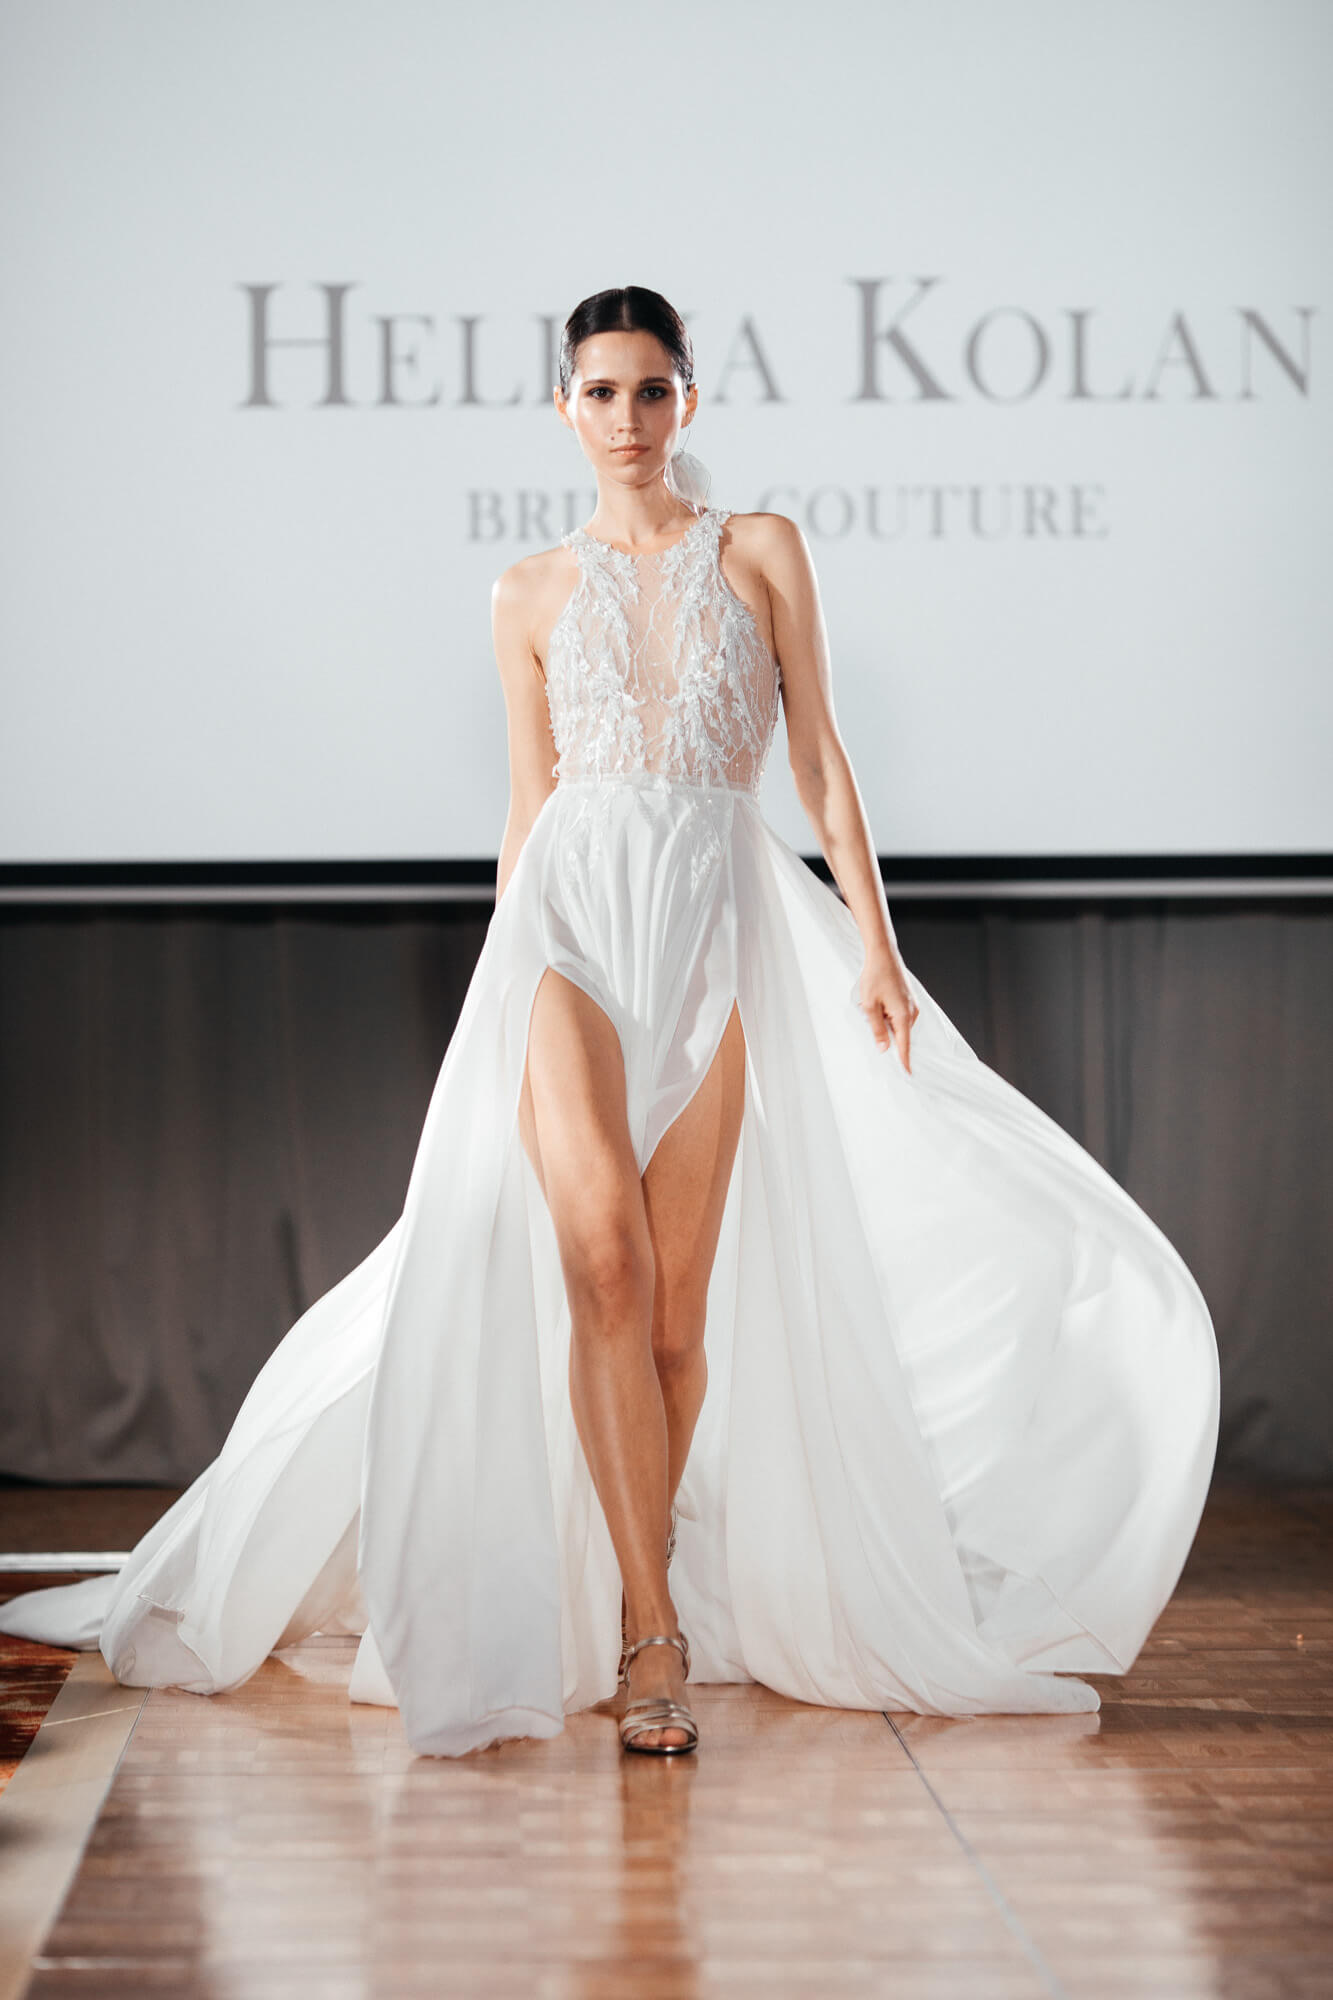 Организация показа свадебных платьев Helena Kolan, агентство BM Weddings & Events